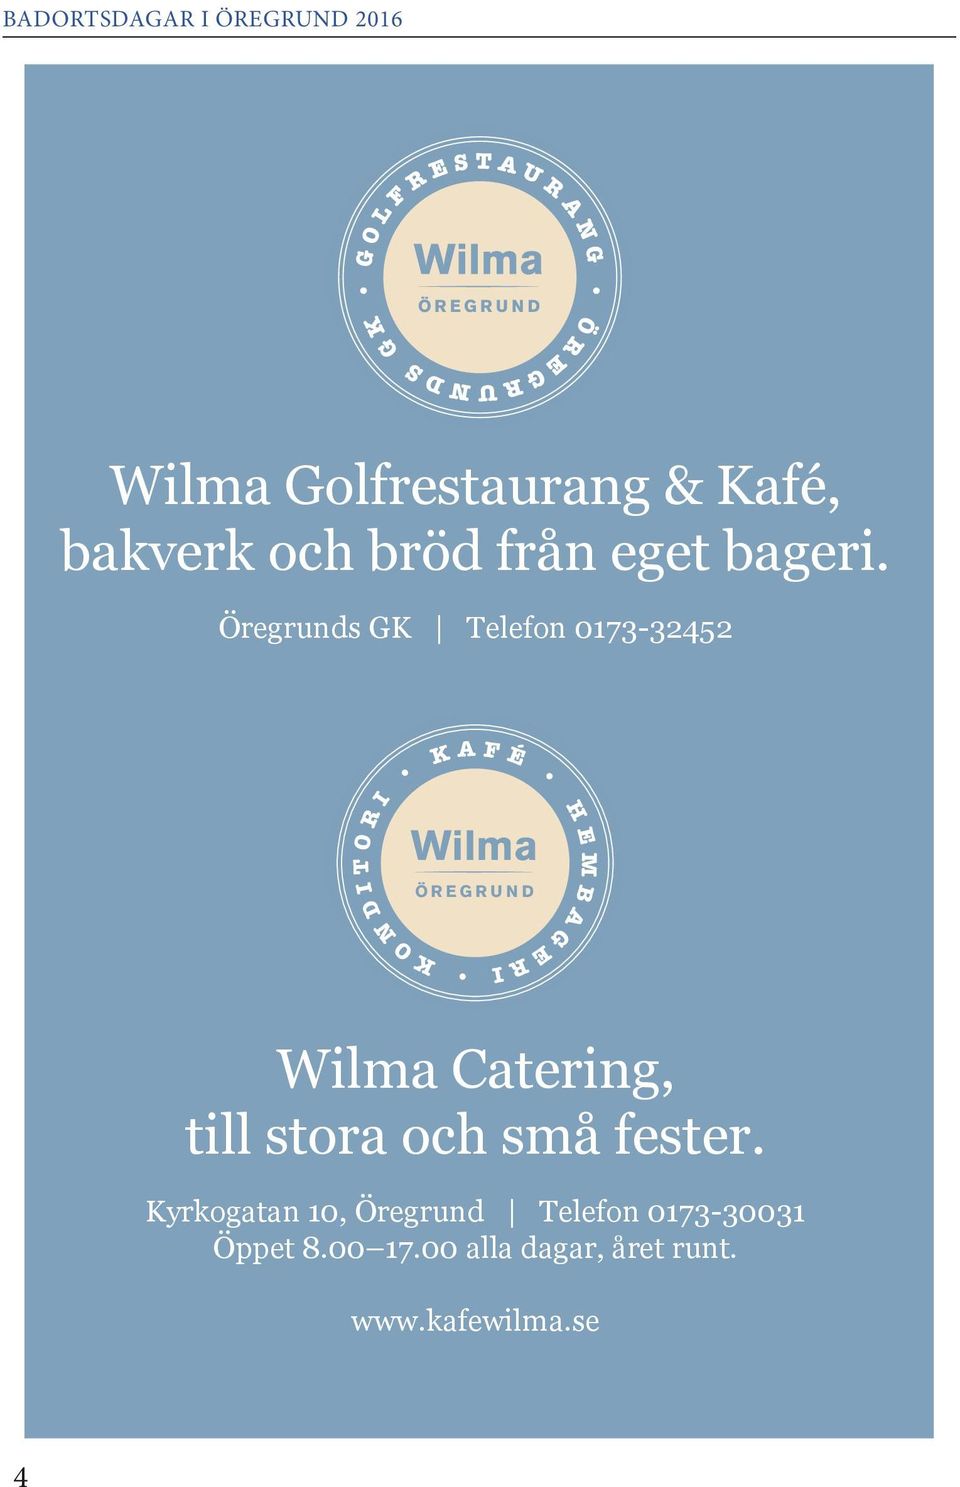 Wilma ÖREGRUND I Wilma Catering, till stora och små fester.